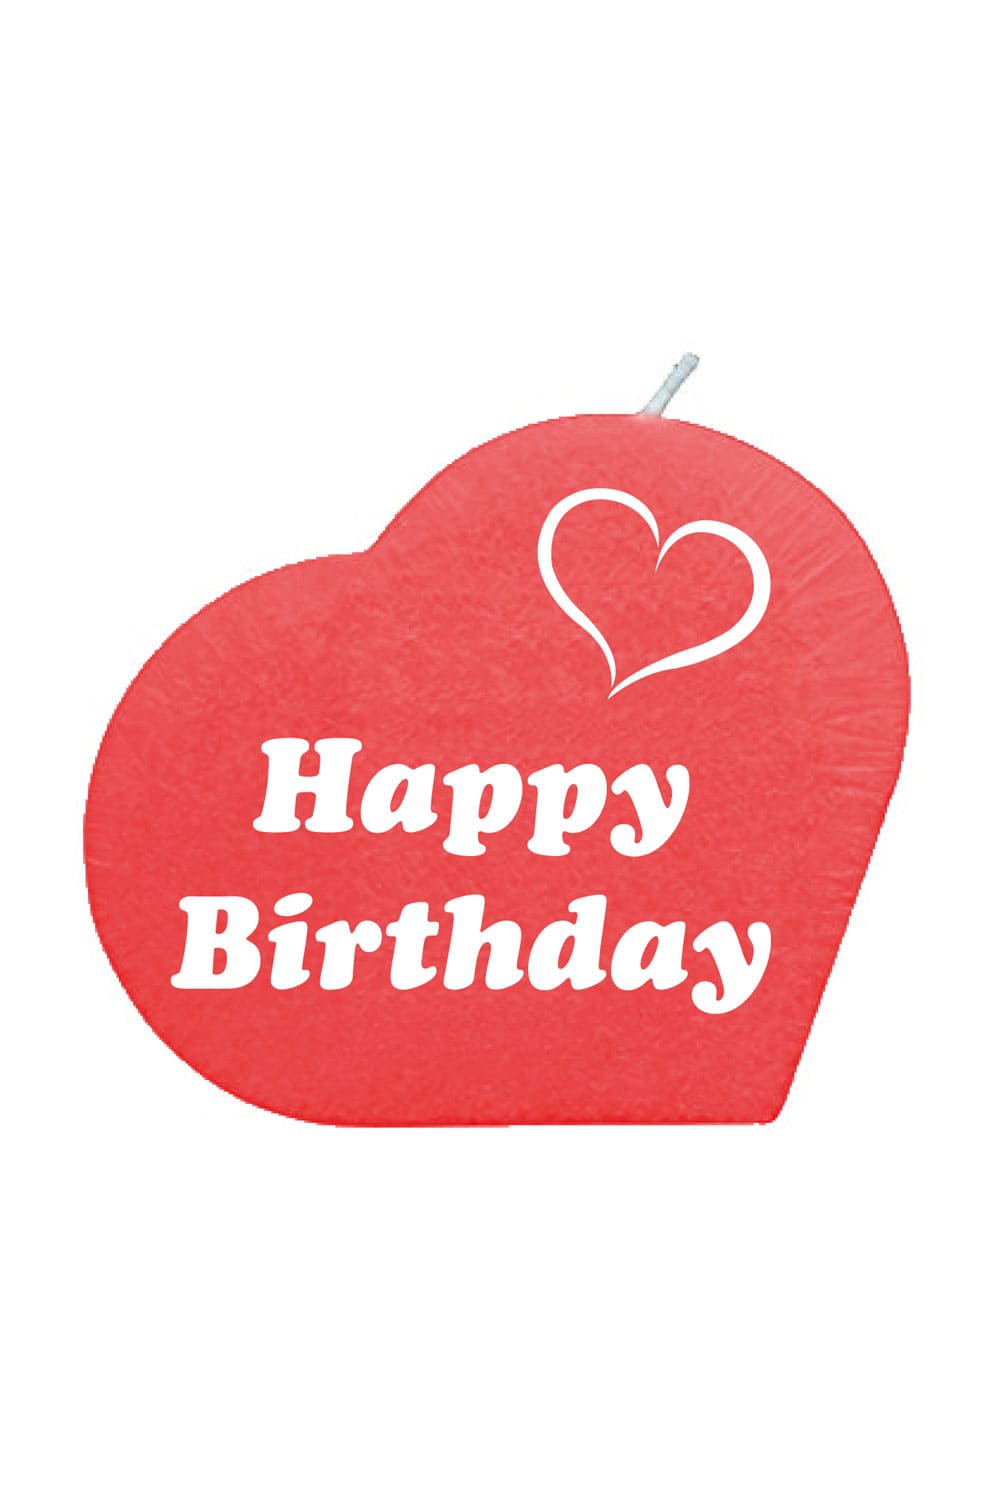 Diese kleine aber feine Herzkerze mit der Aufschrift: Happy Birthday, ist ein perfektes Geschenk oder Mitbringsel zum Geburtstag. Die Geschenk Kerze ist in der Farbe rot und wird in einem Boexli versendet. 